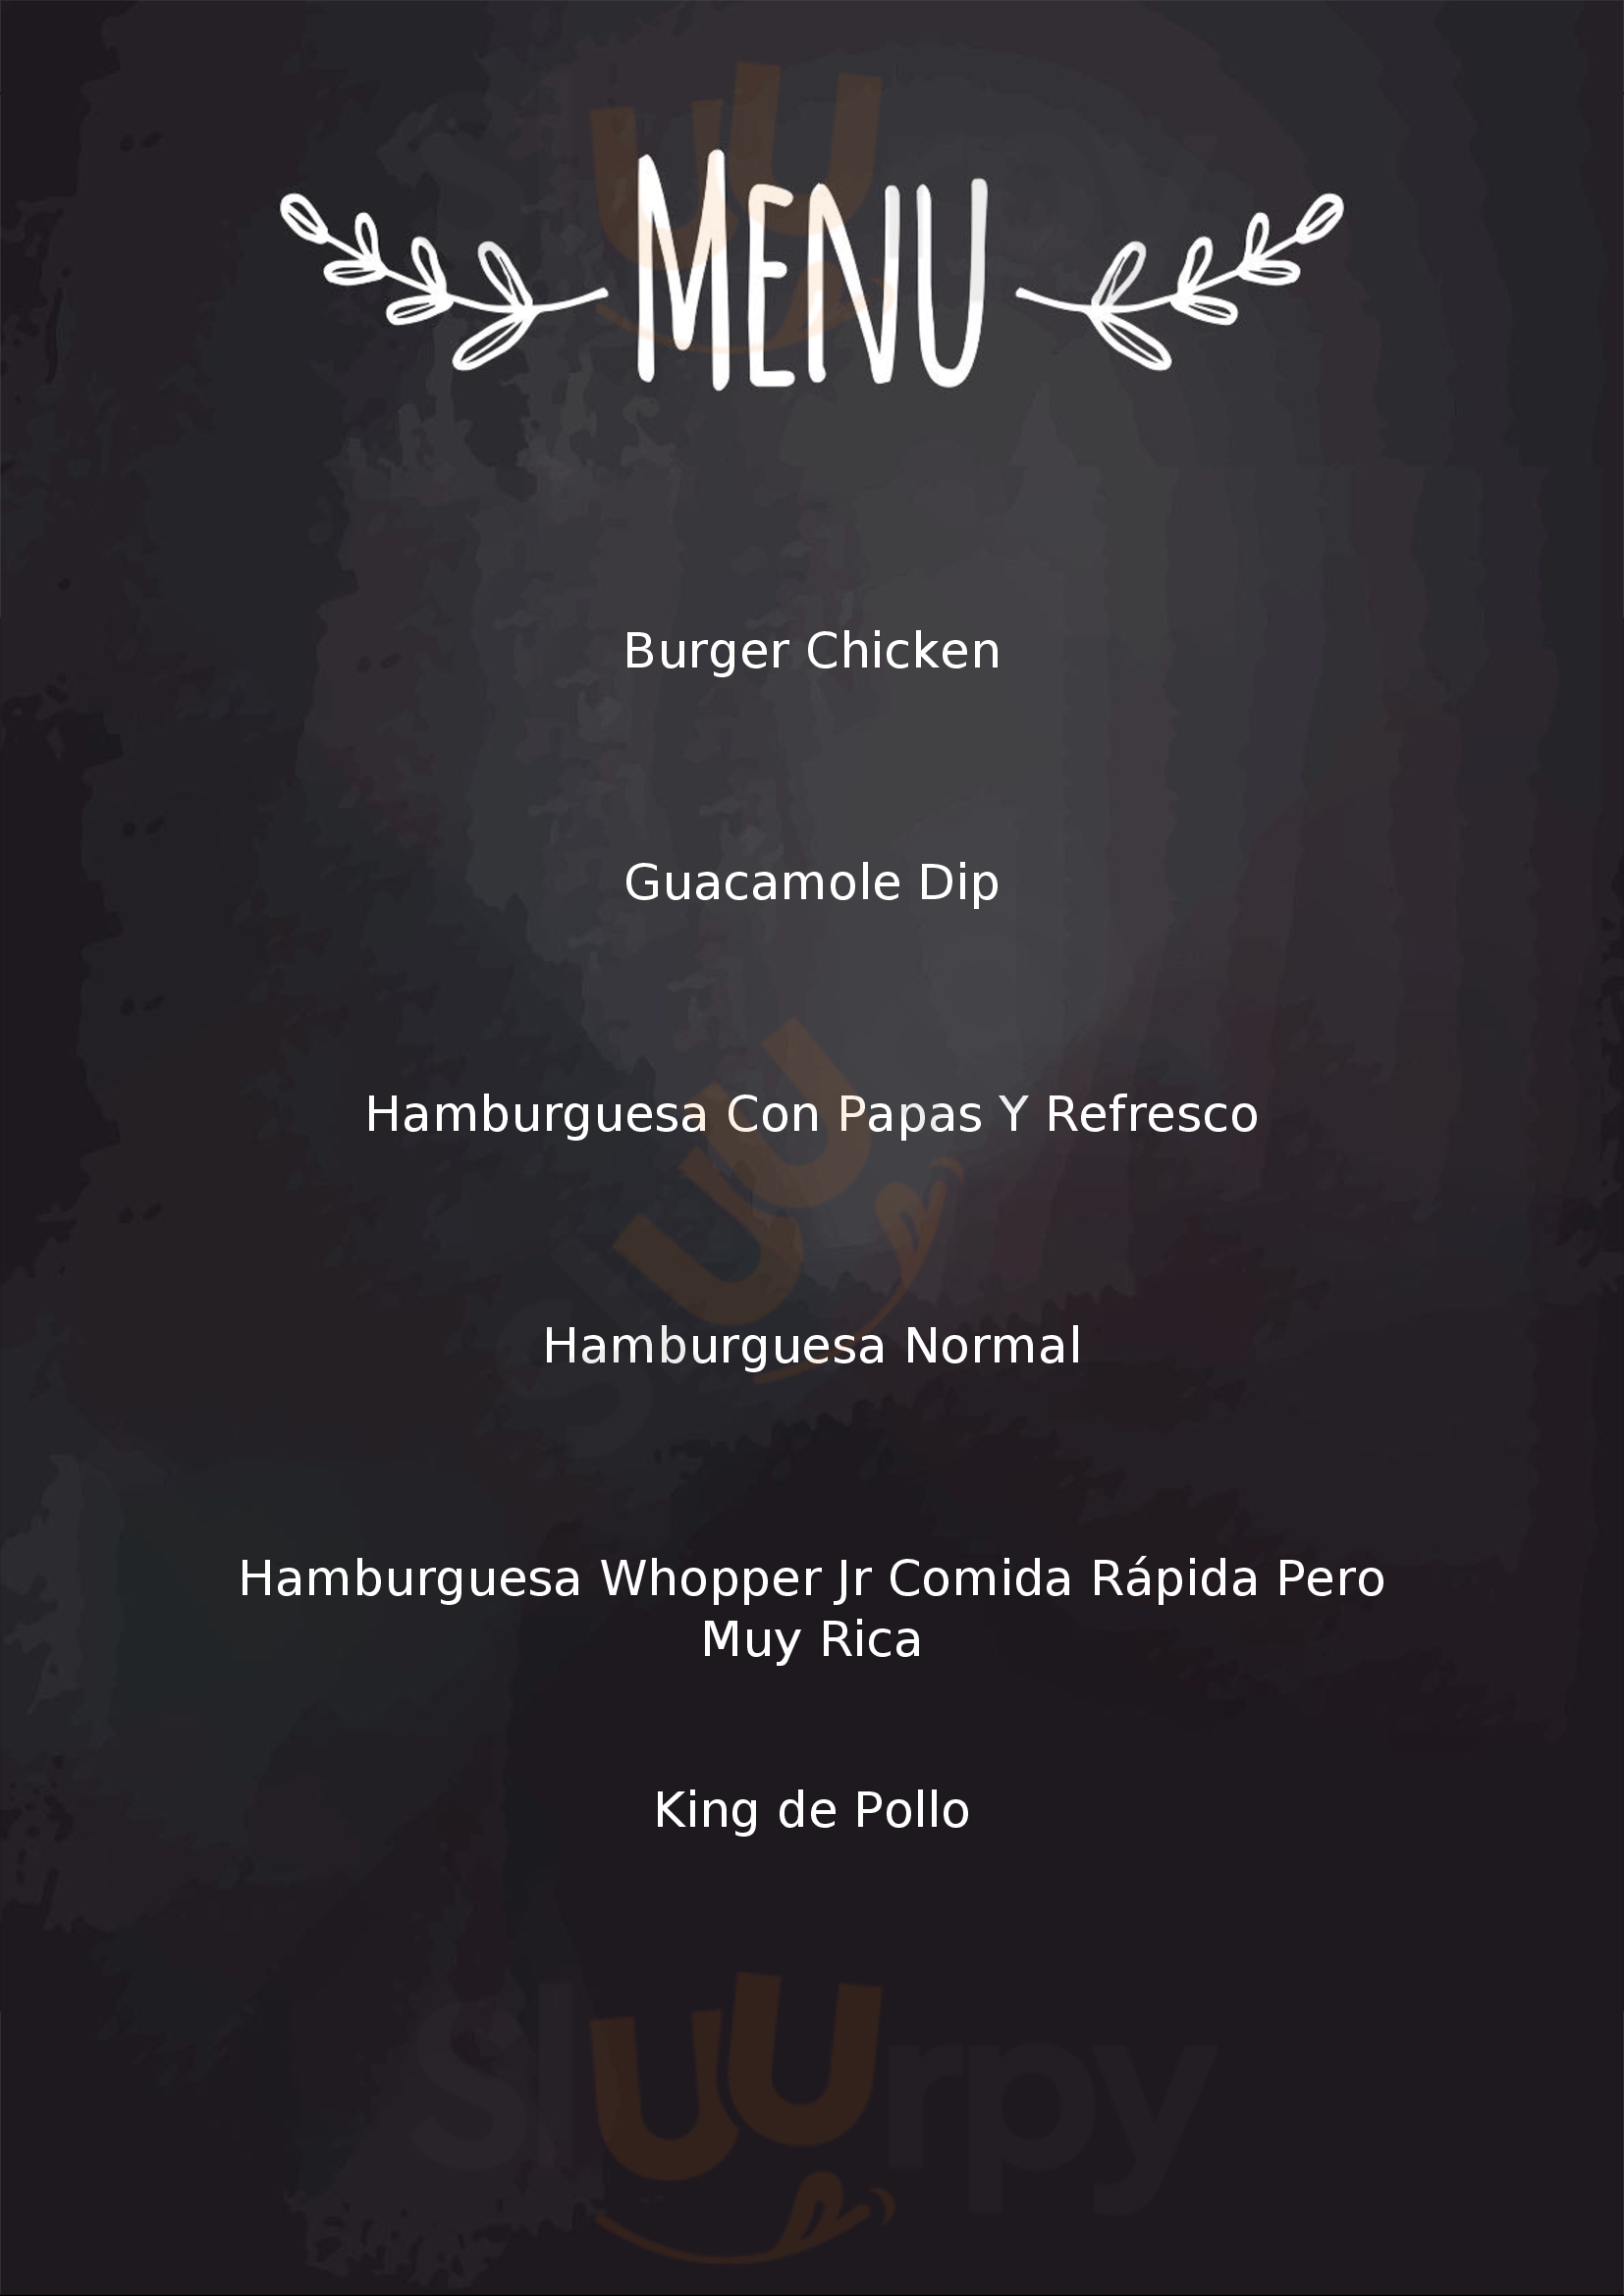 Burger King Ciudad de México Menu - 1